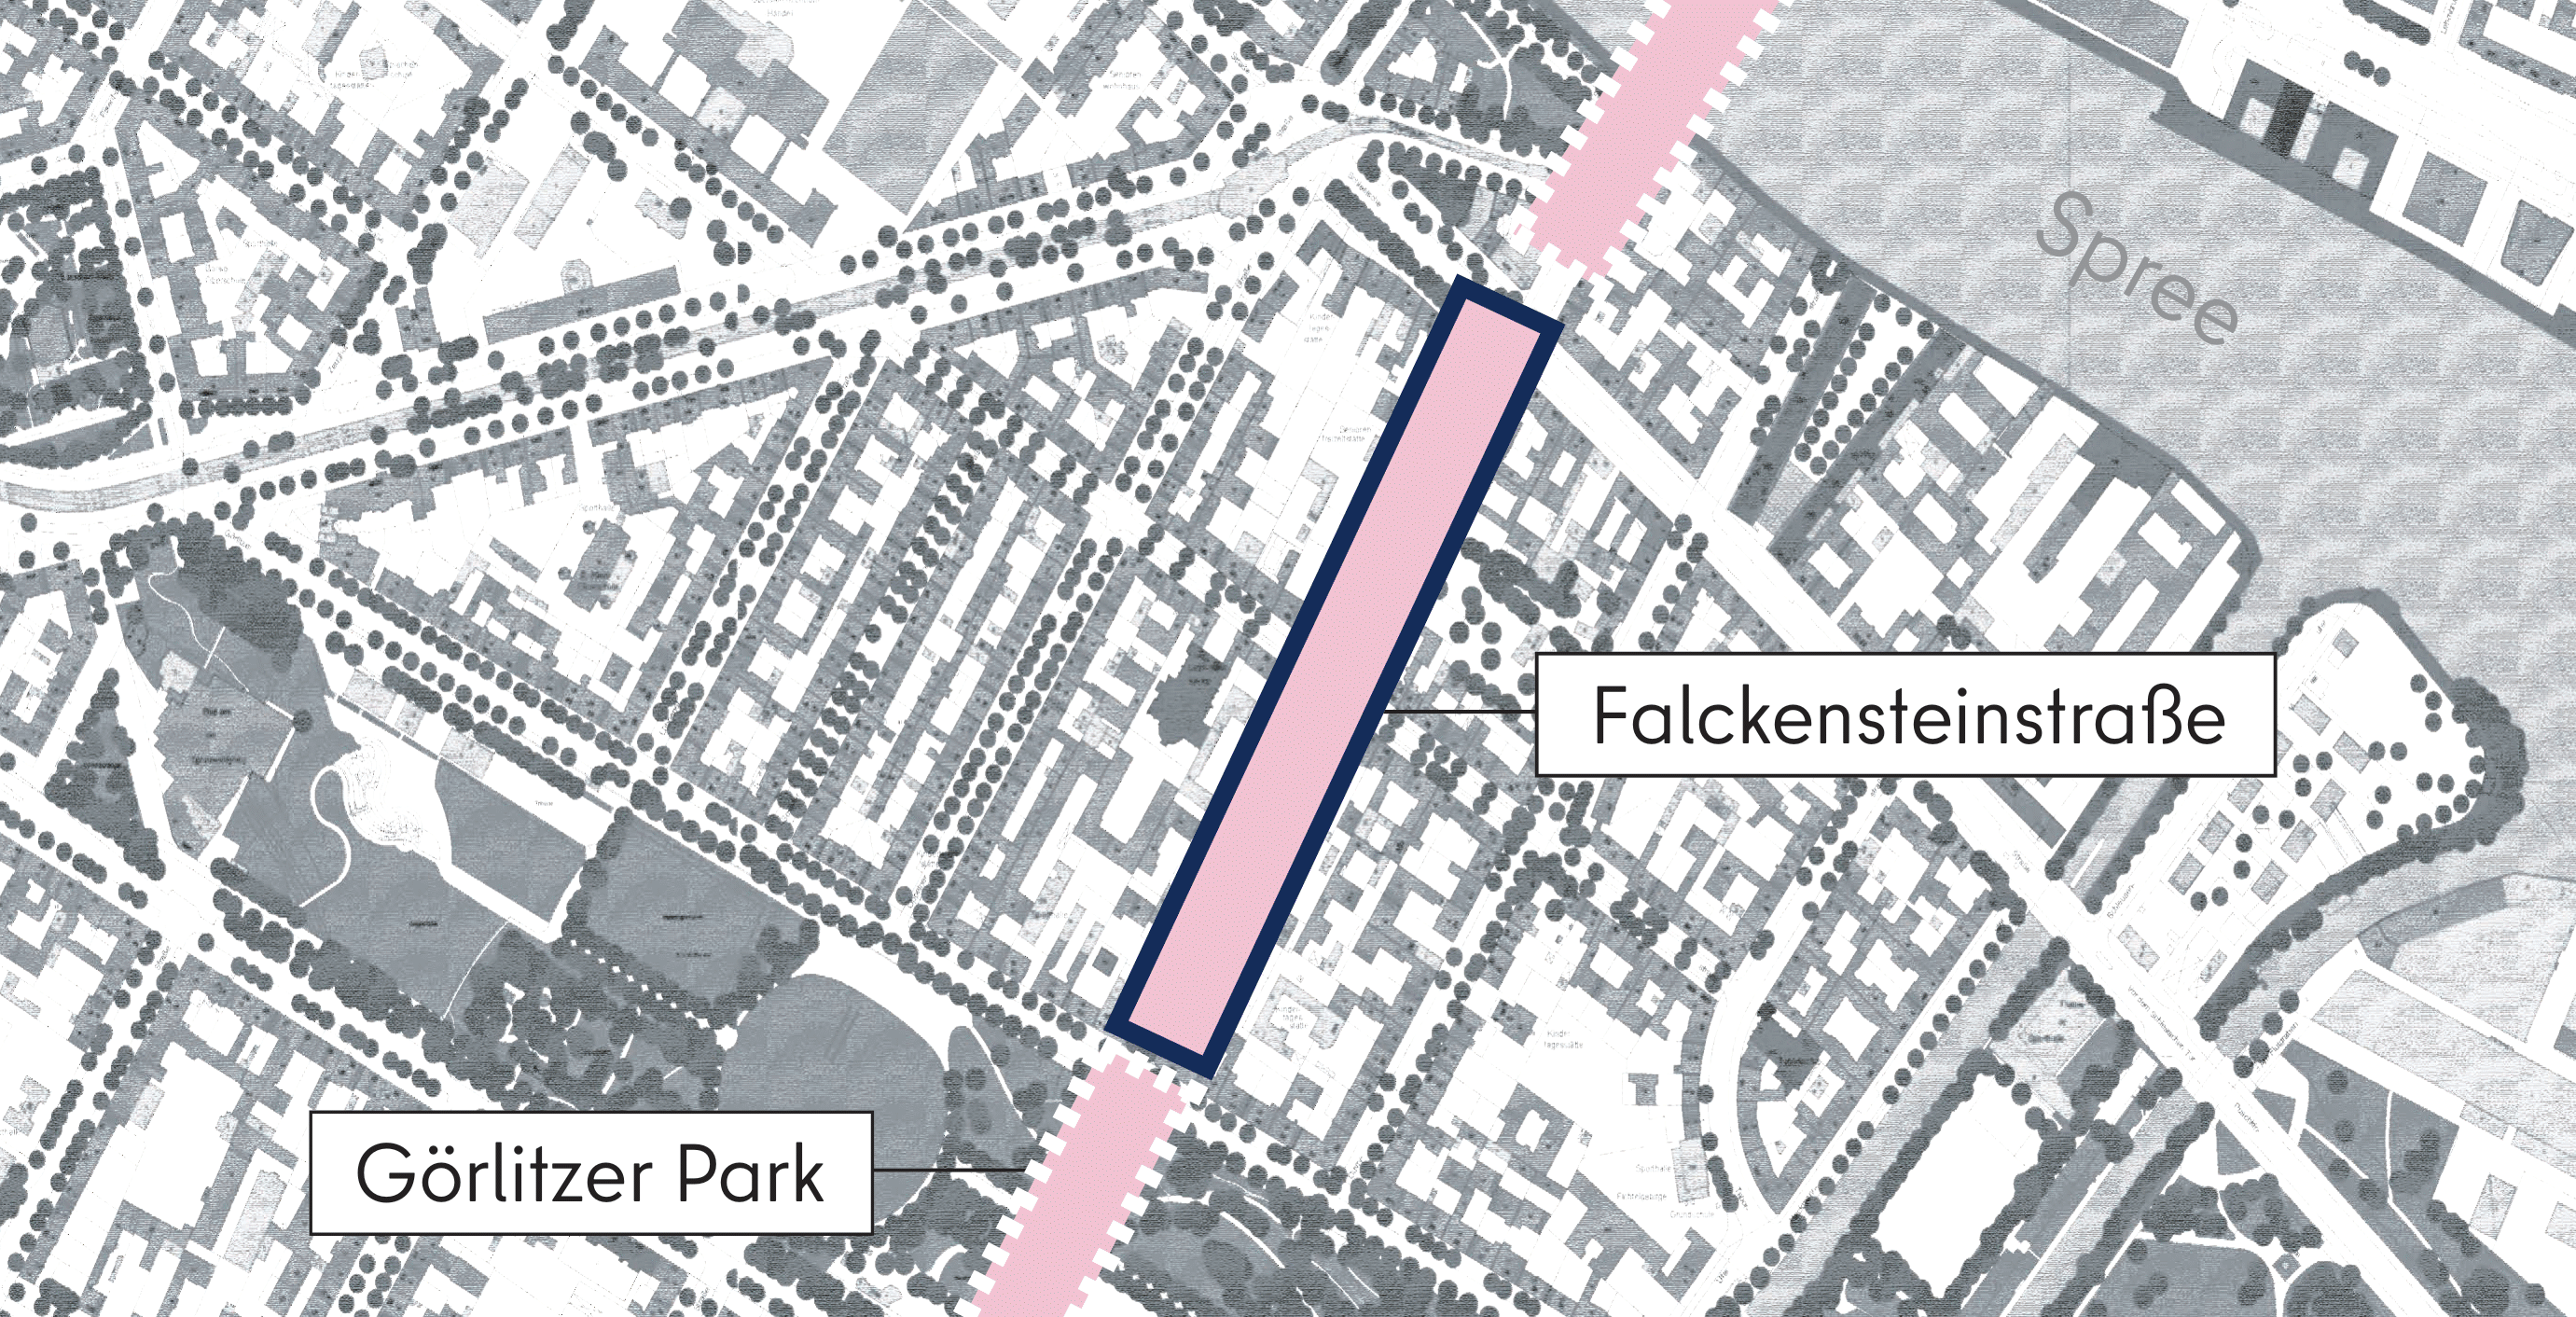 Dieses Bild zeigt eine grafische Darstellung des Abschnitts Falckensteinstraße aus der Vogelperspektive